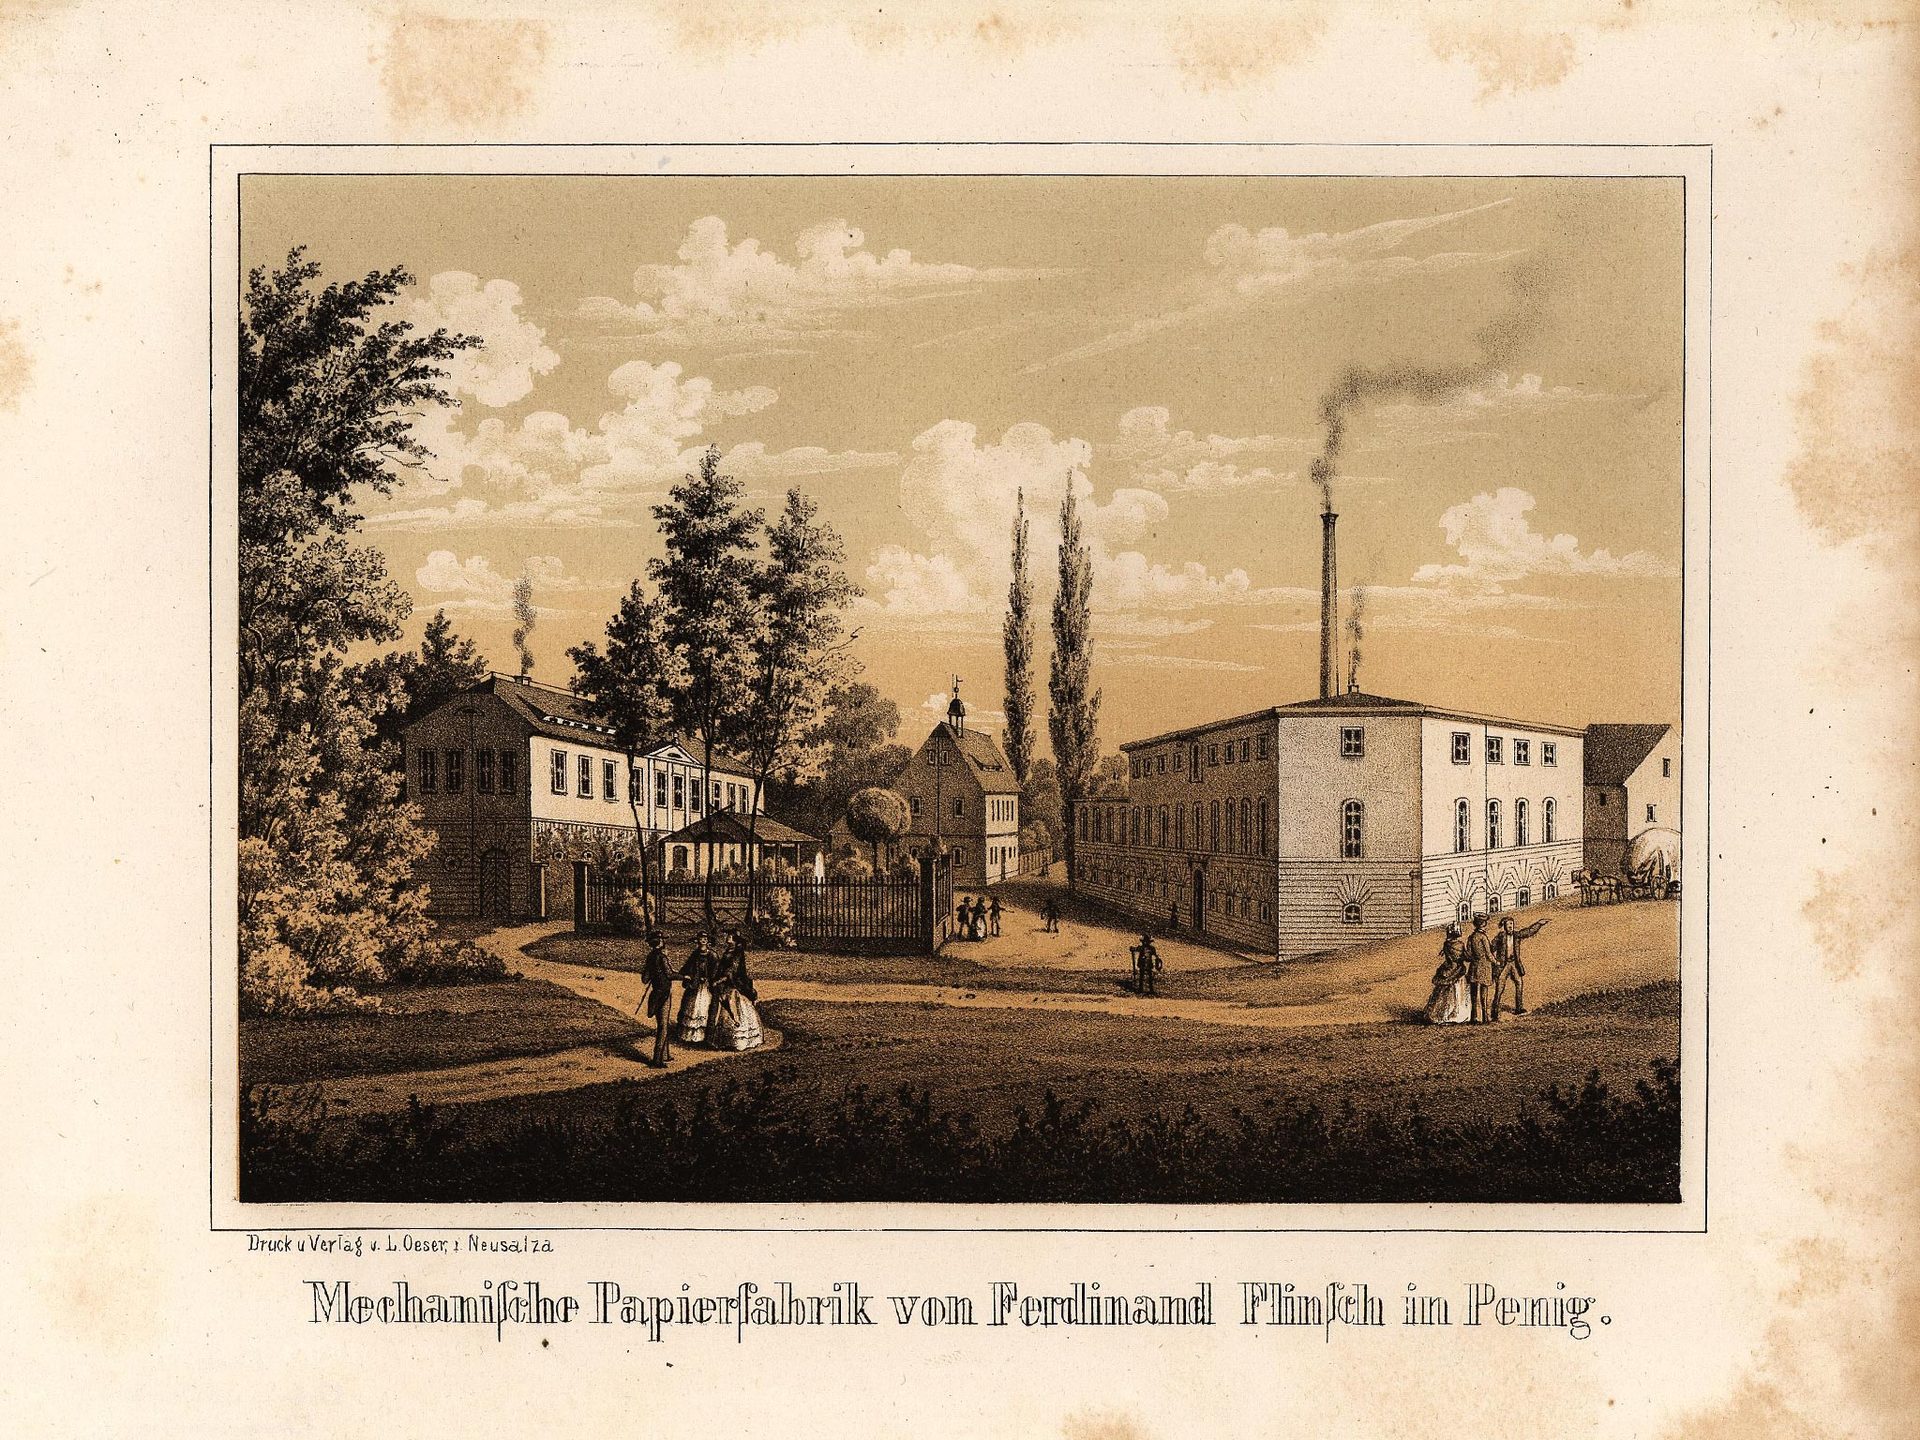 Mechanische Papierfabrik von Ferdinand Flinsch in Penig